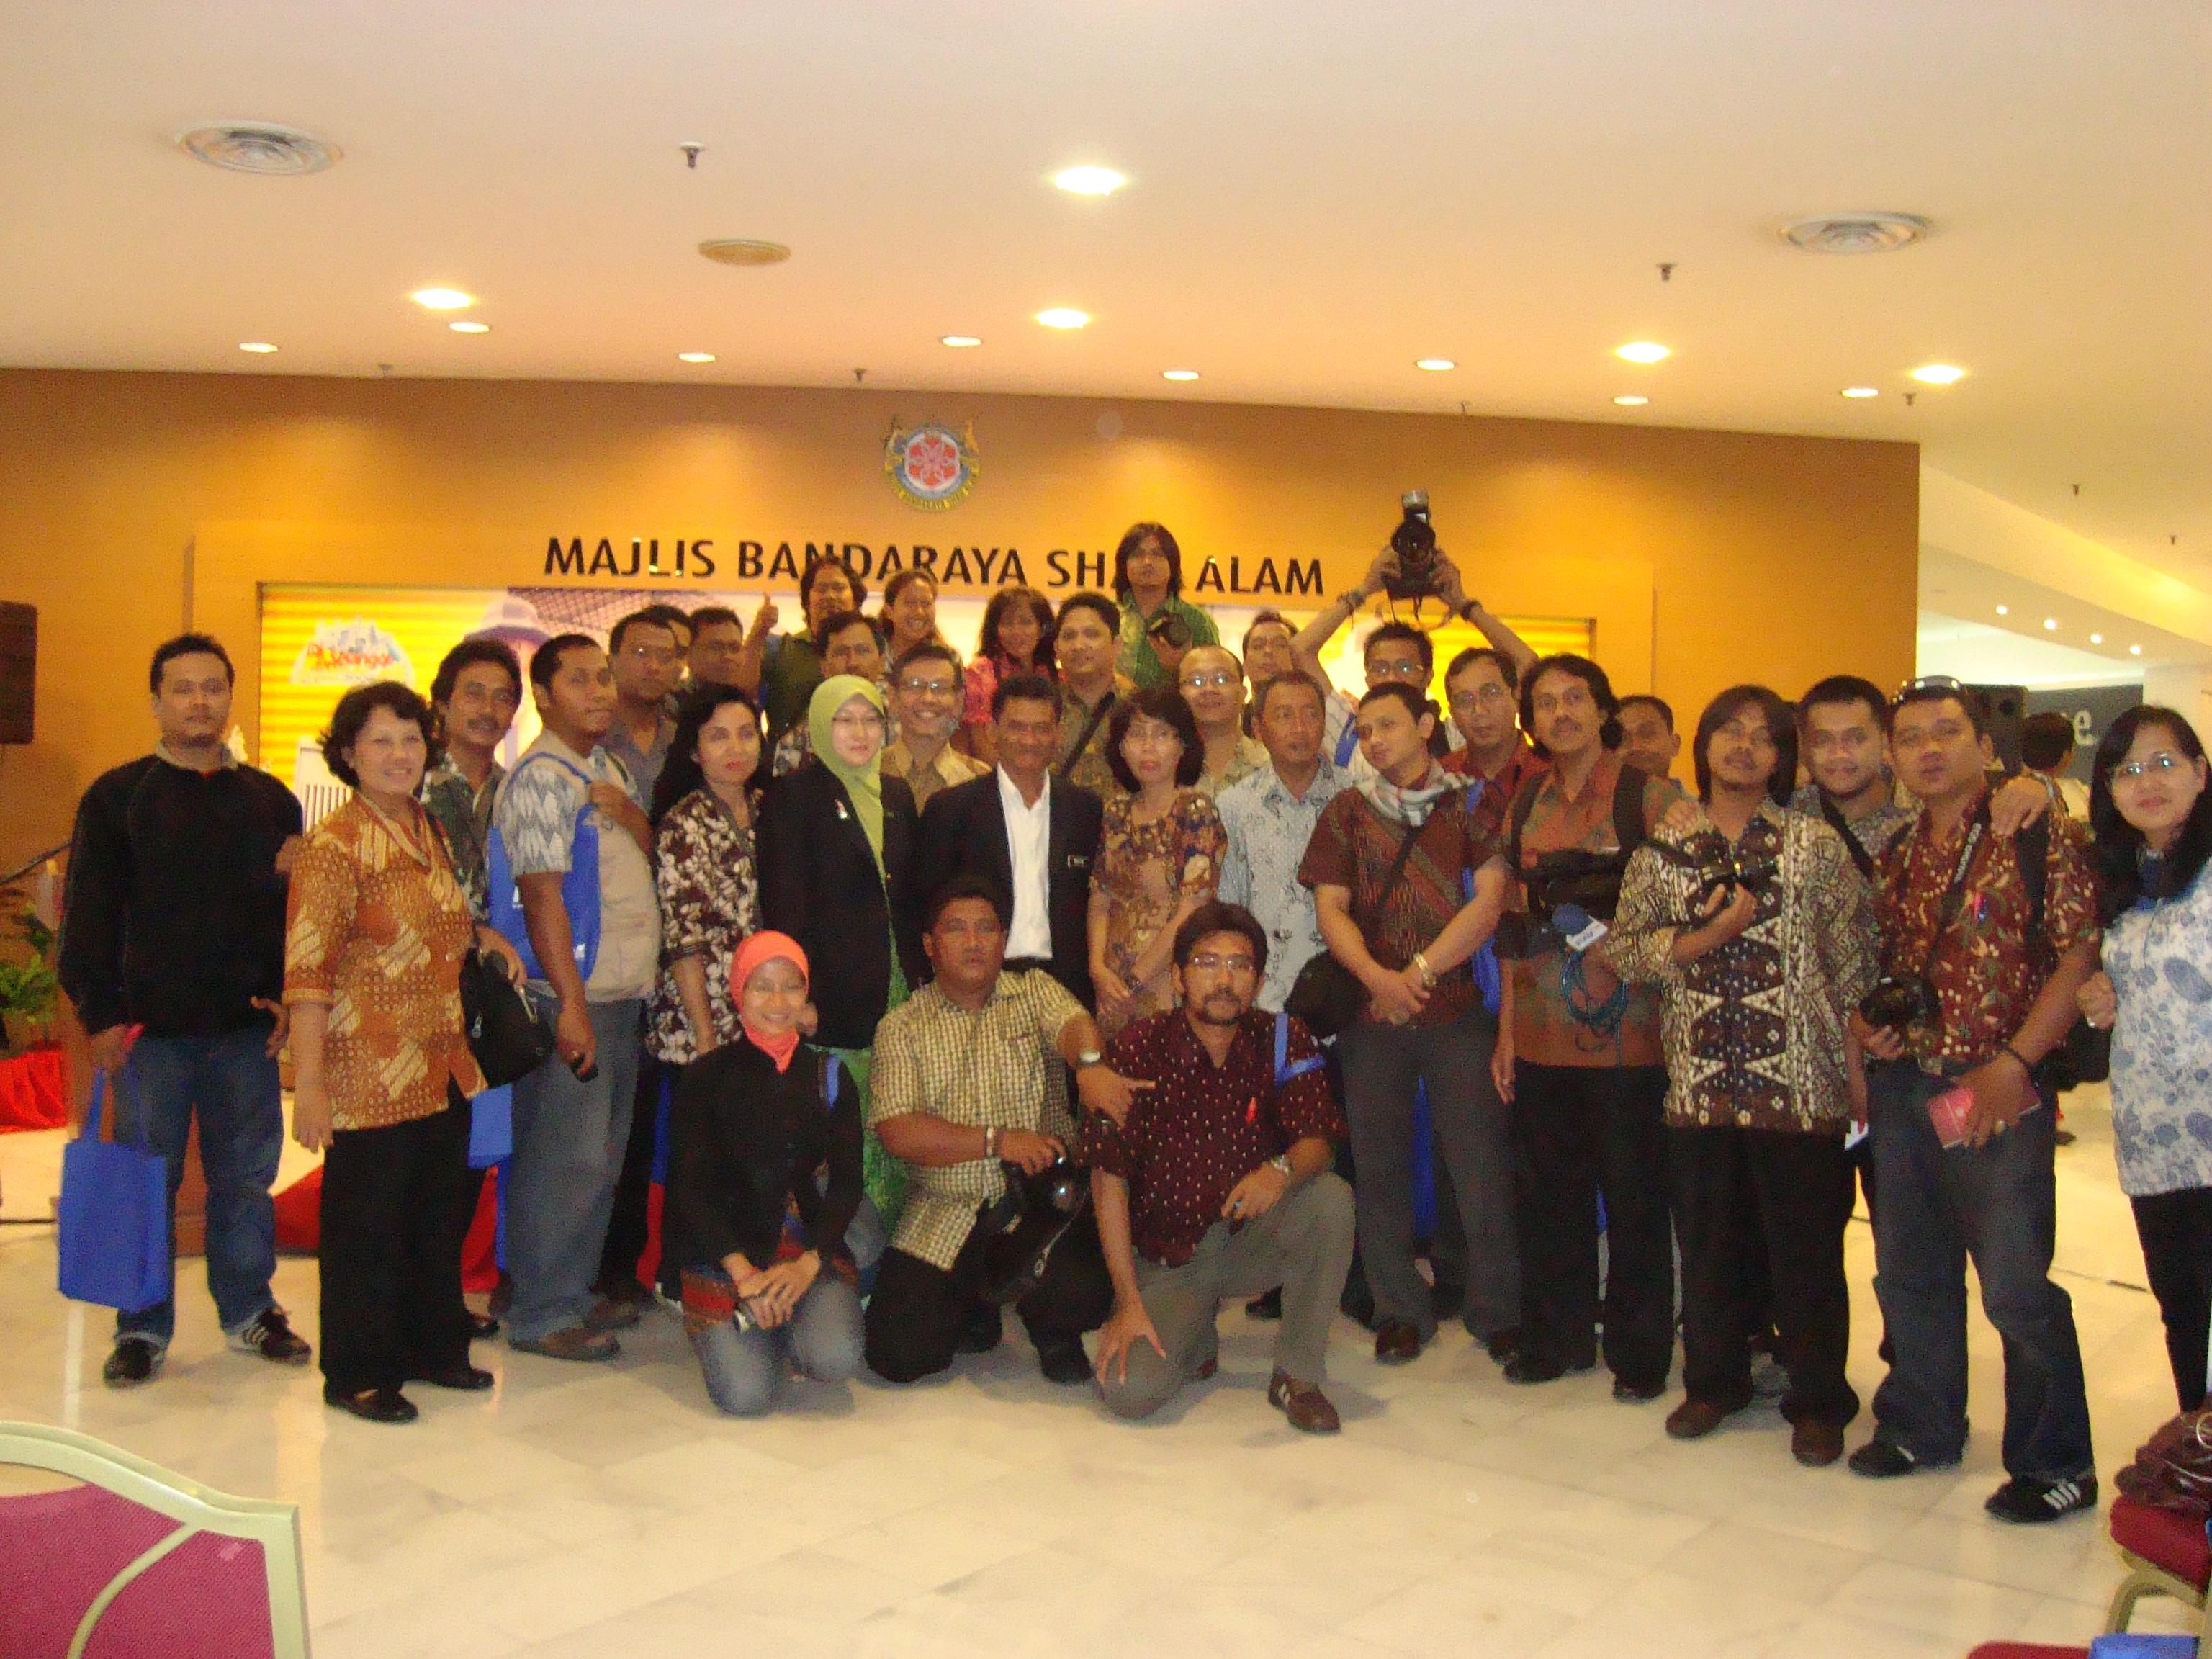 22 wartawan Surabaya foto bersama dengan pejabat kantor Majlis Bandaraya Shah Alam